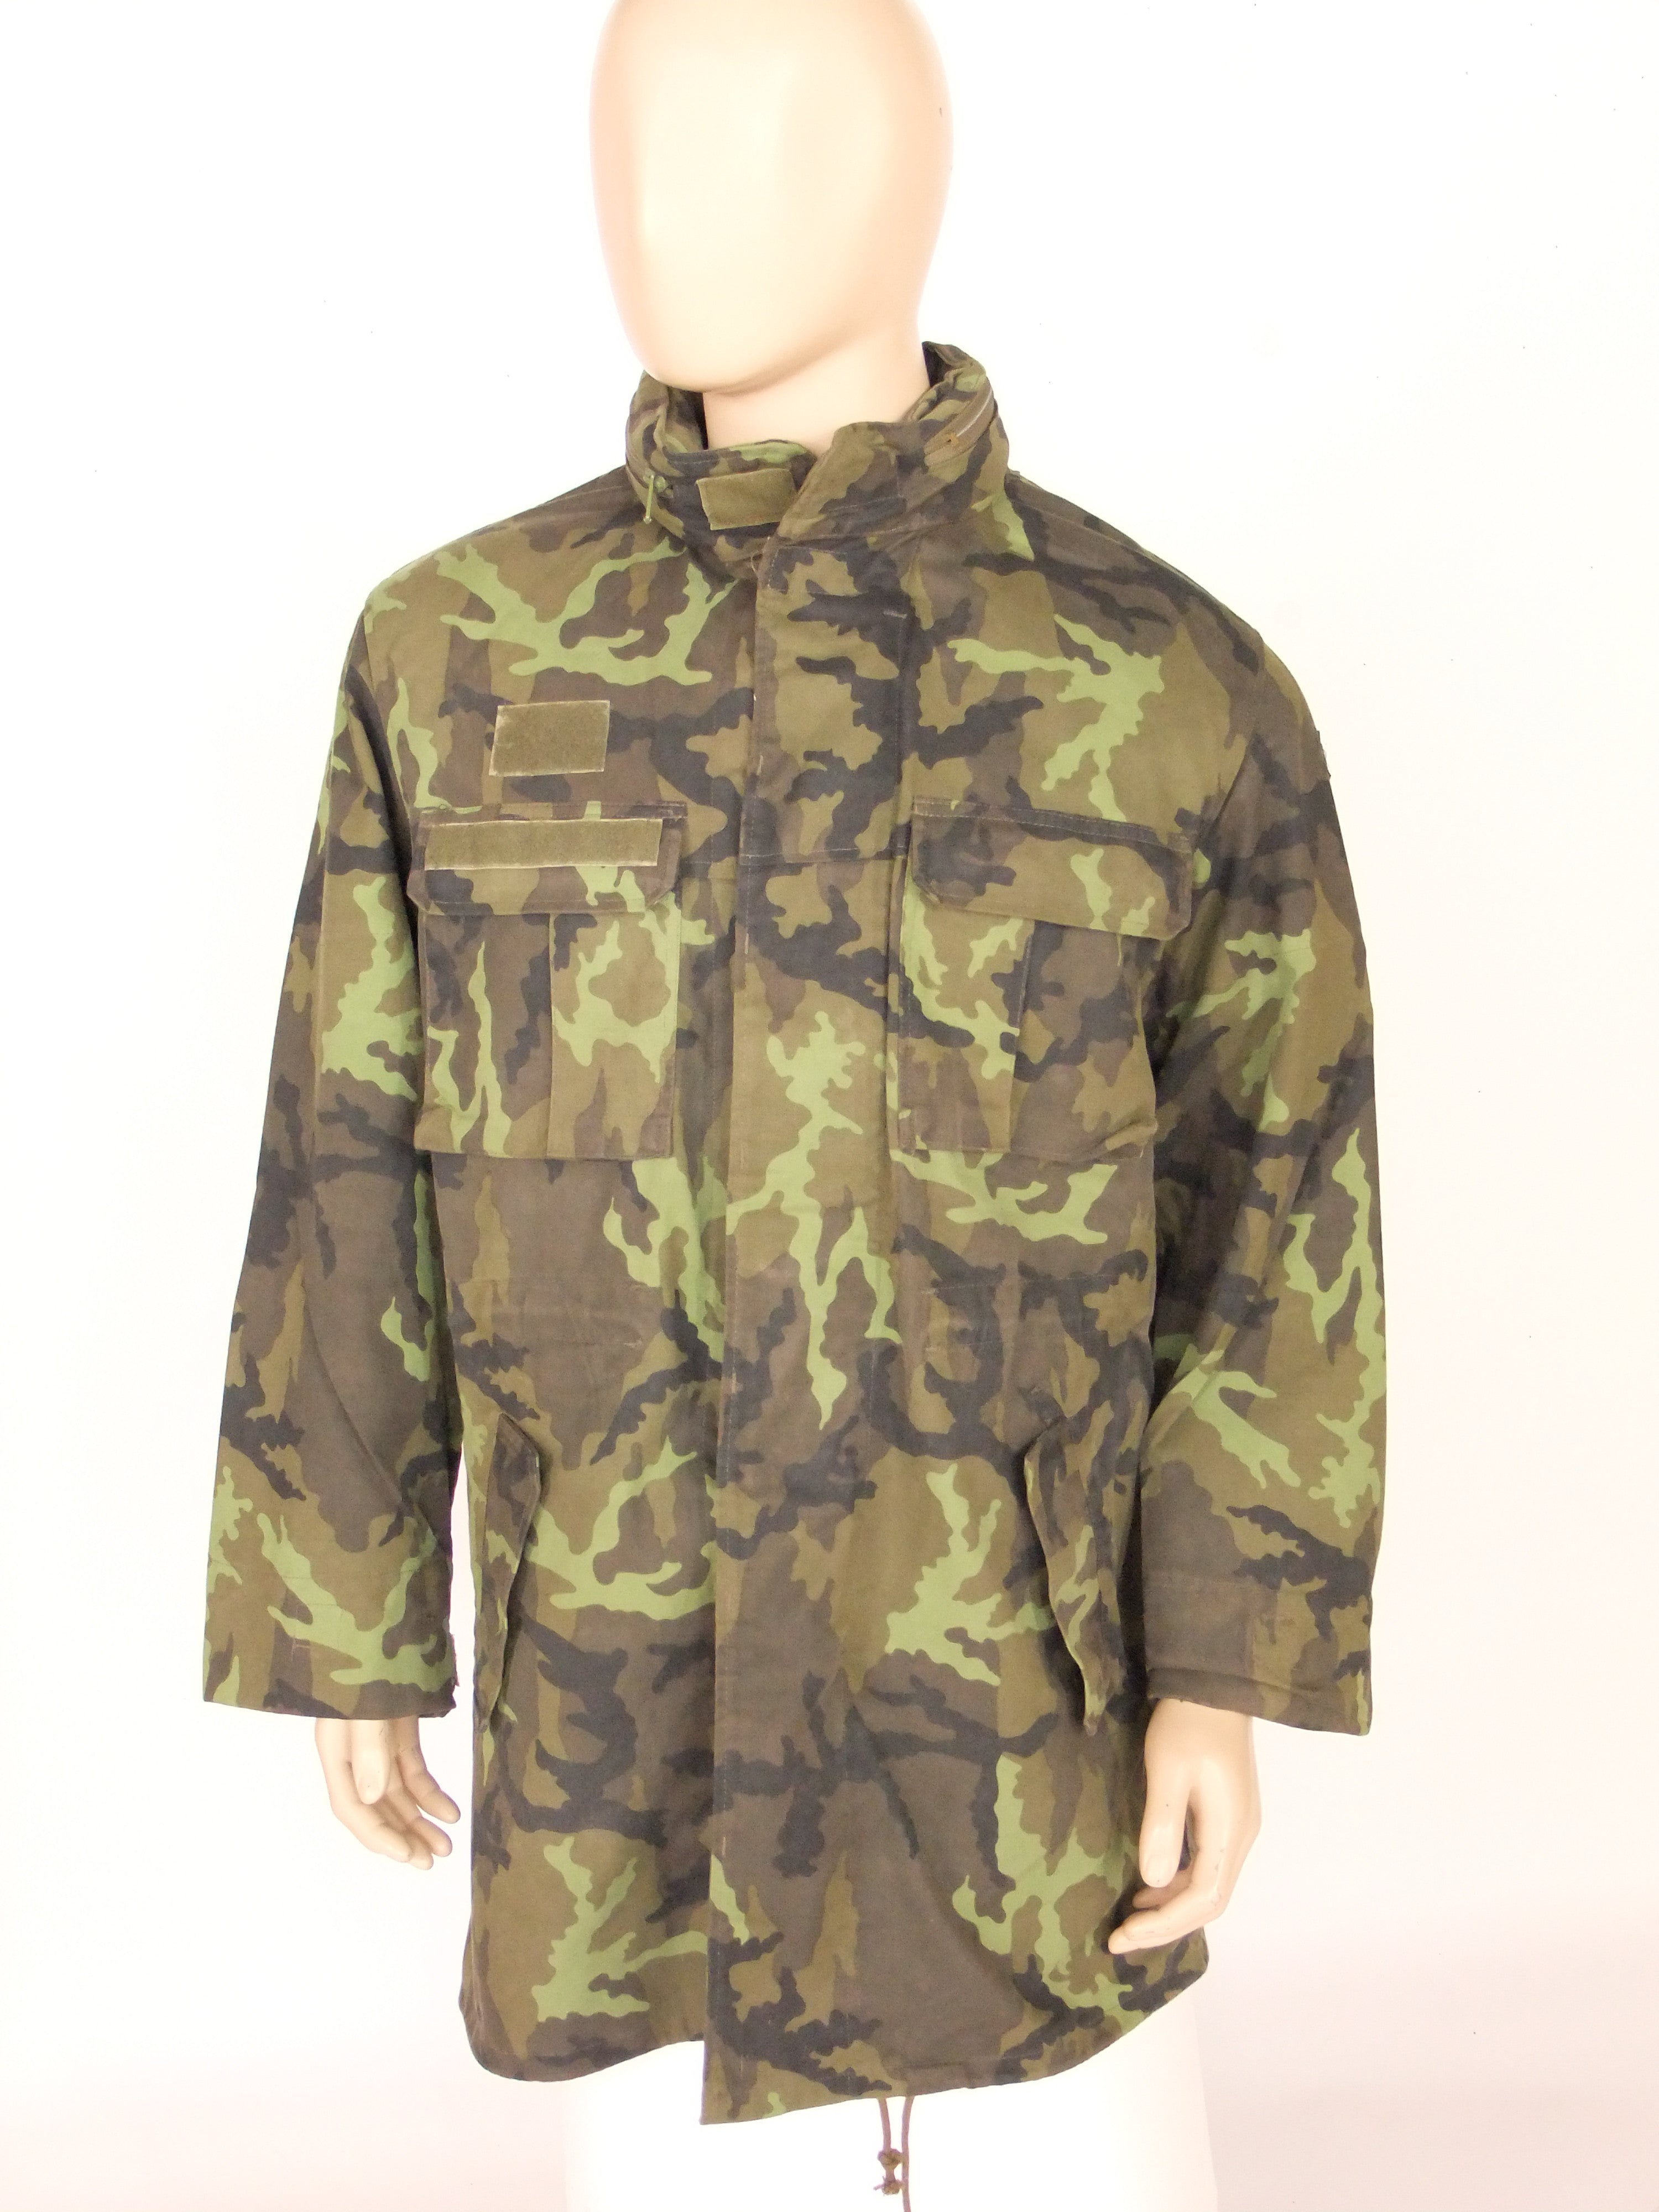 Czech army camo jacket – Golding Surplus